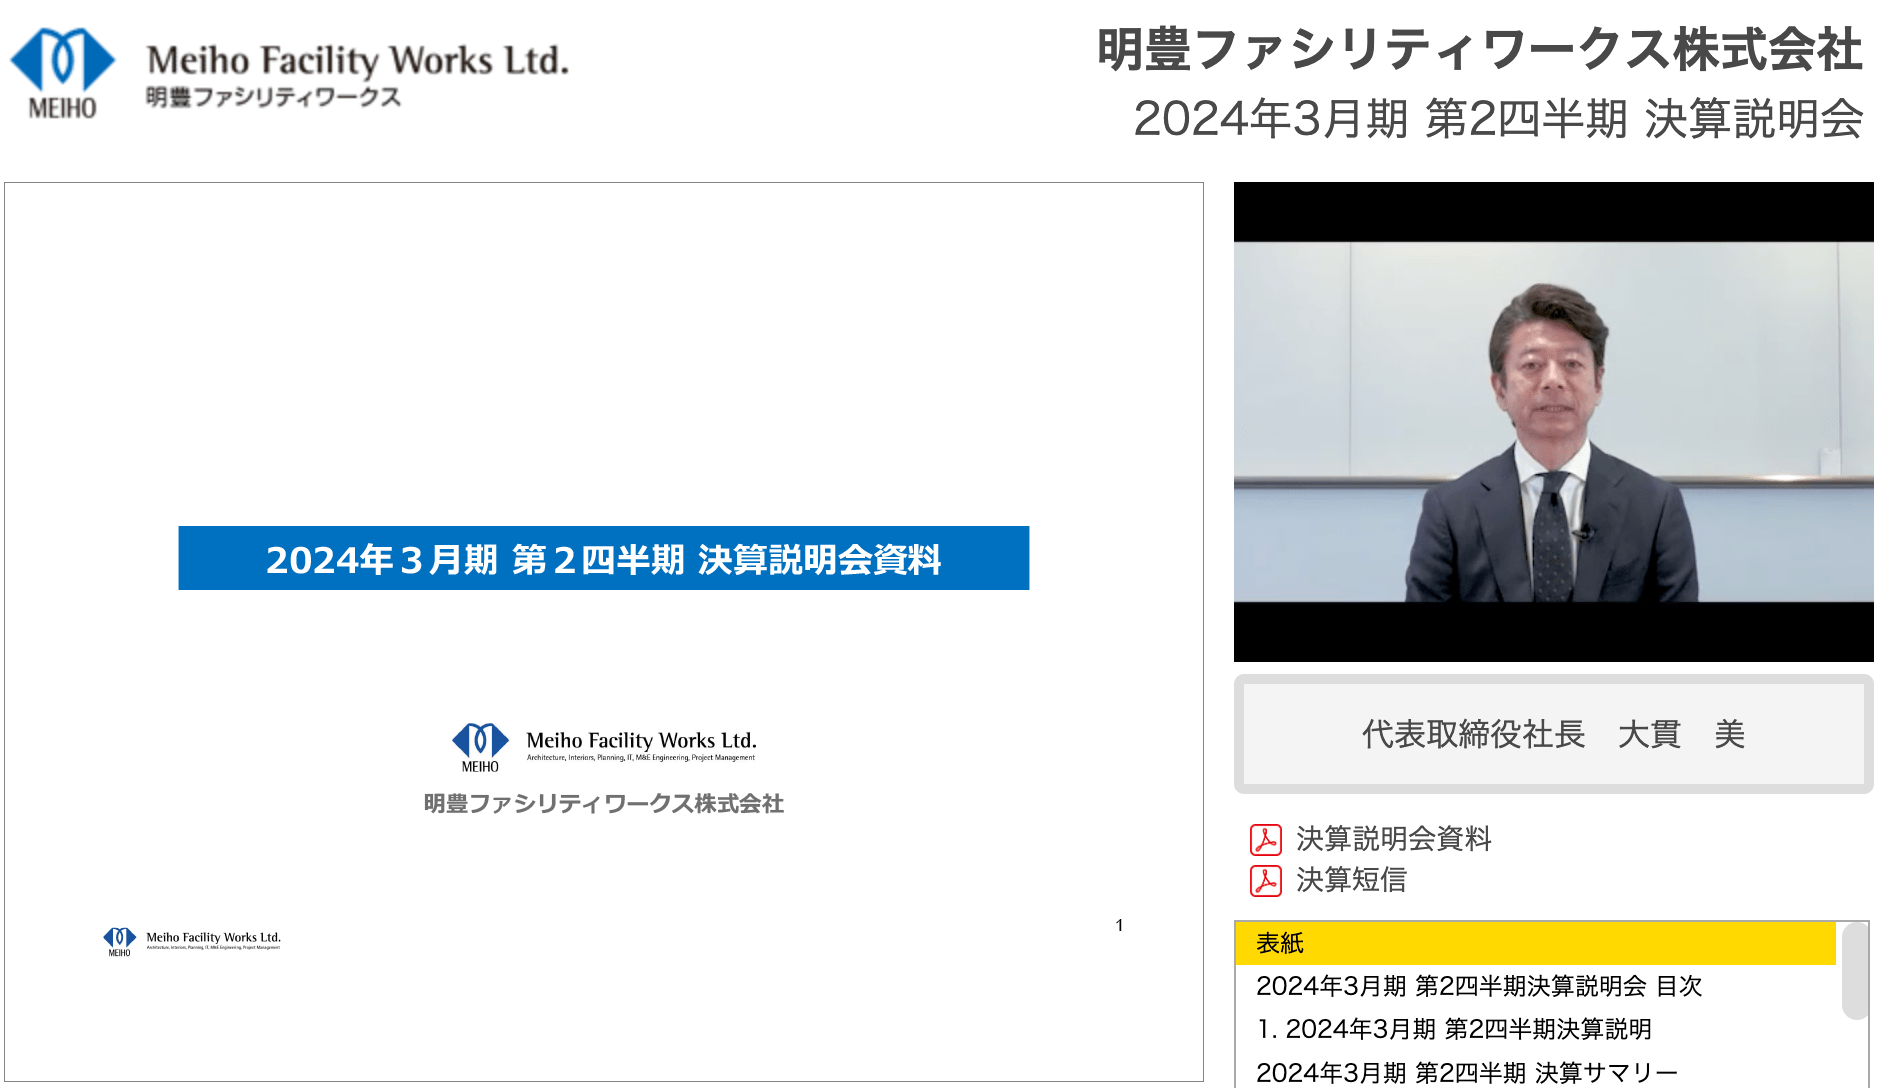 明豊ファシリティワークス株式会社 2024年3月期 第2四半期決算説明会動画 表紙